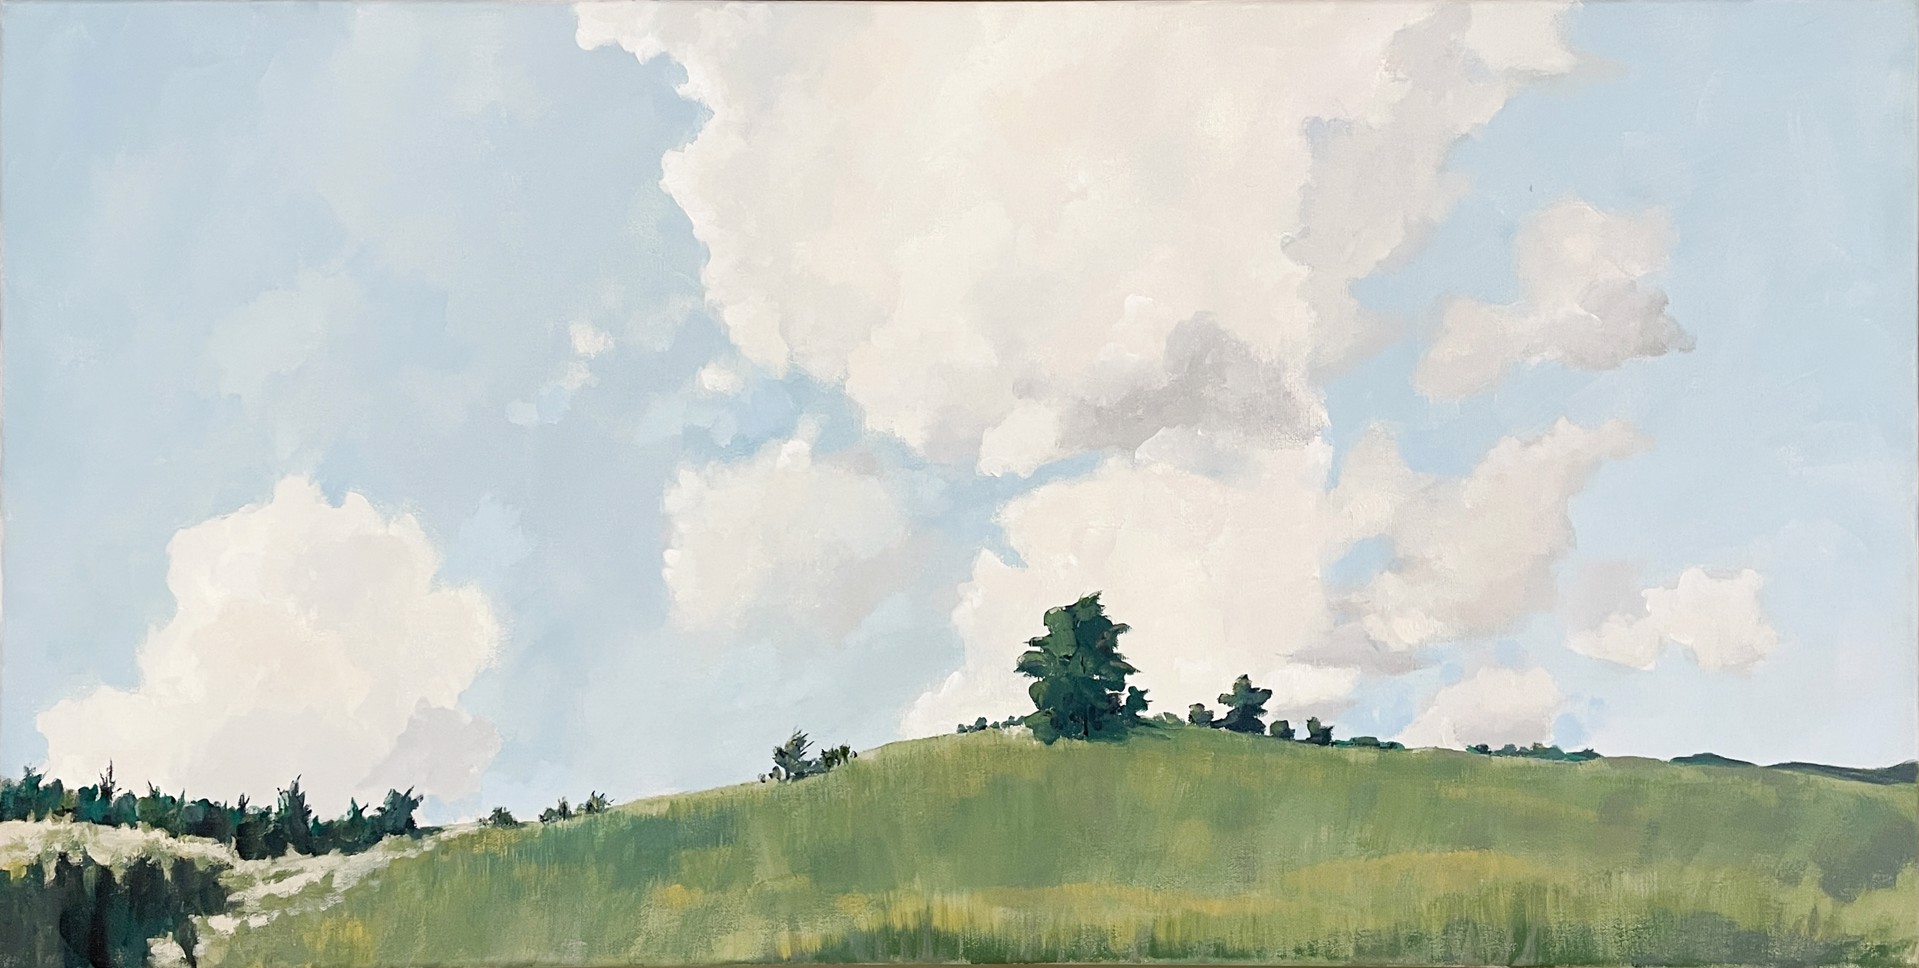 Upper Meadow in June by Joseph Rapp